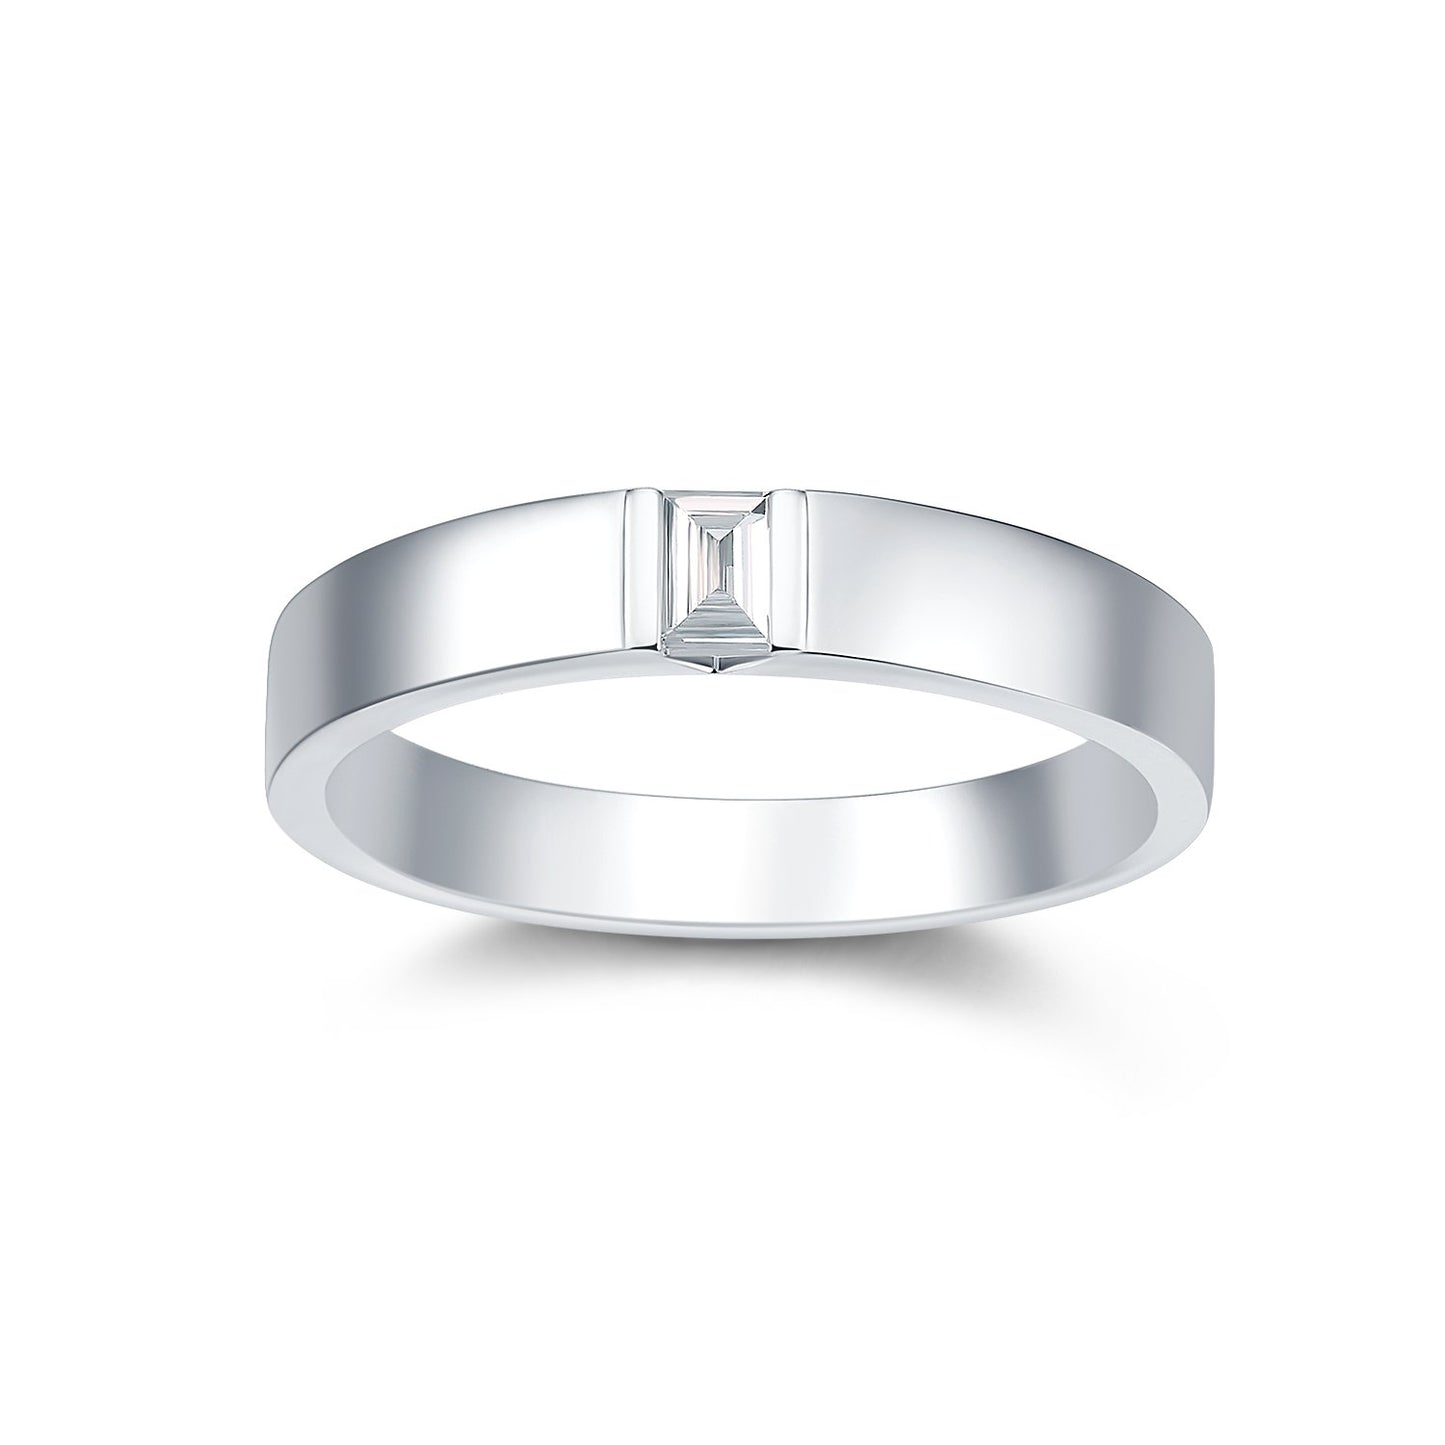 THIALH - 光影系列 - 白金鑲長方形鑽石結婚戒指